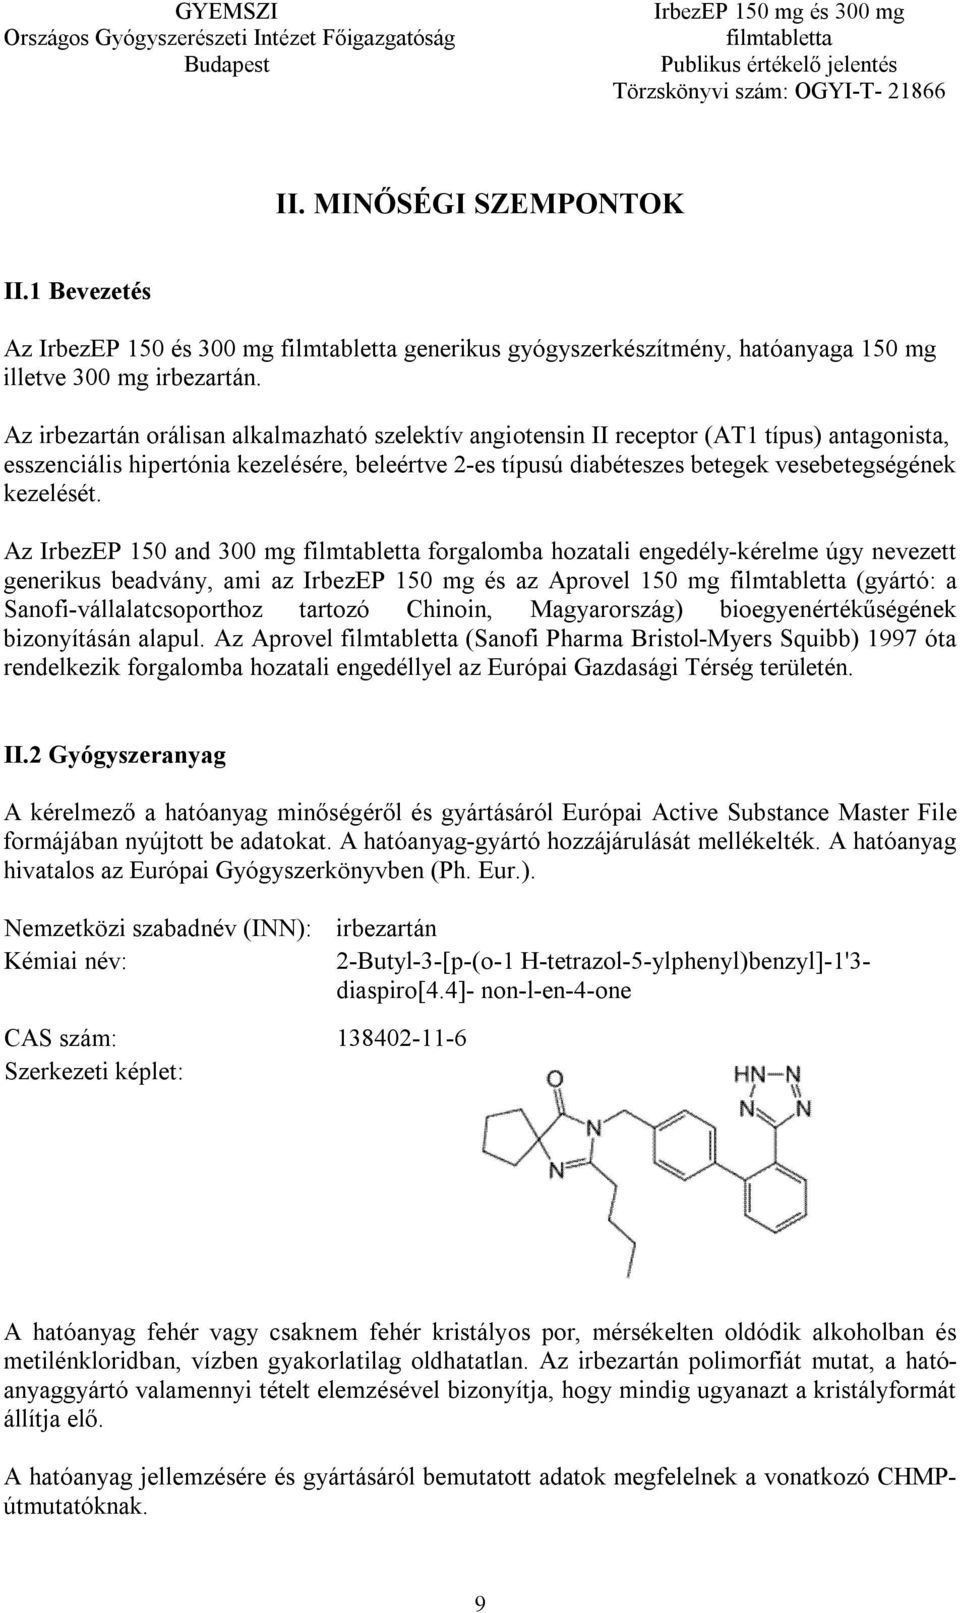 Az IrbezEP 150 and 300 mg forgalomba hozatali engedély-kérelme úgy nevezett generikus beadvány, ami az IrbezEP 150 mg és az Aprovel 150 mg (gyártó: a Sanofi-vállalatcsoporthoz tartozó Chinoin,